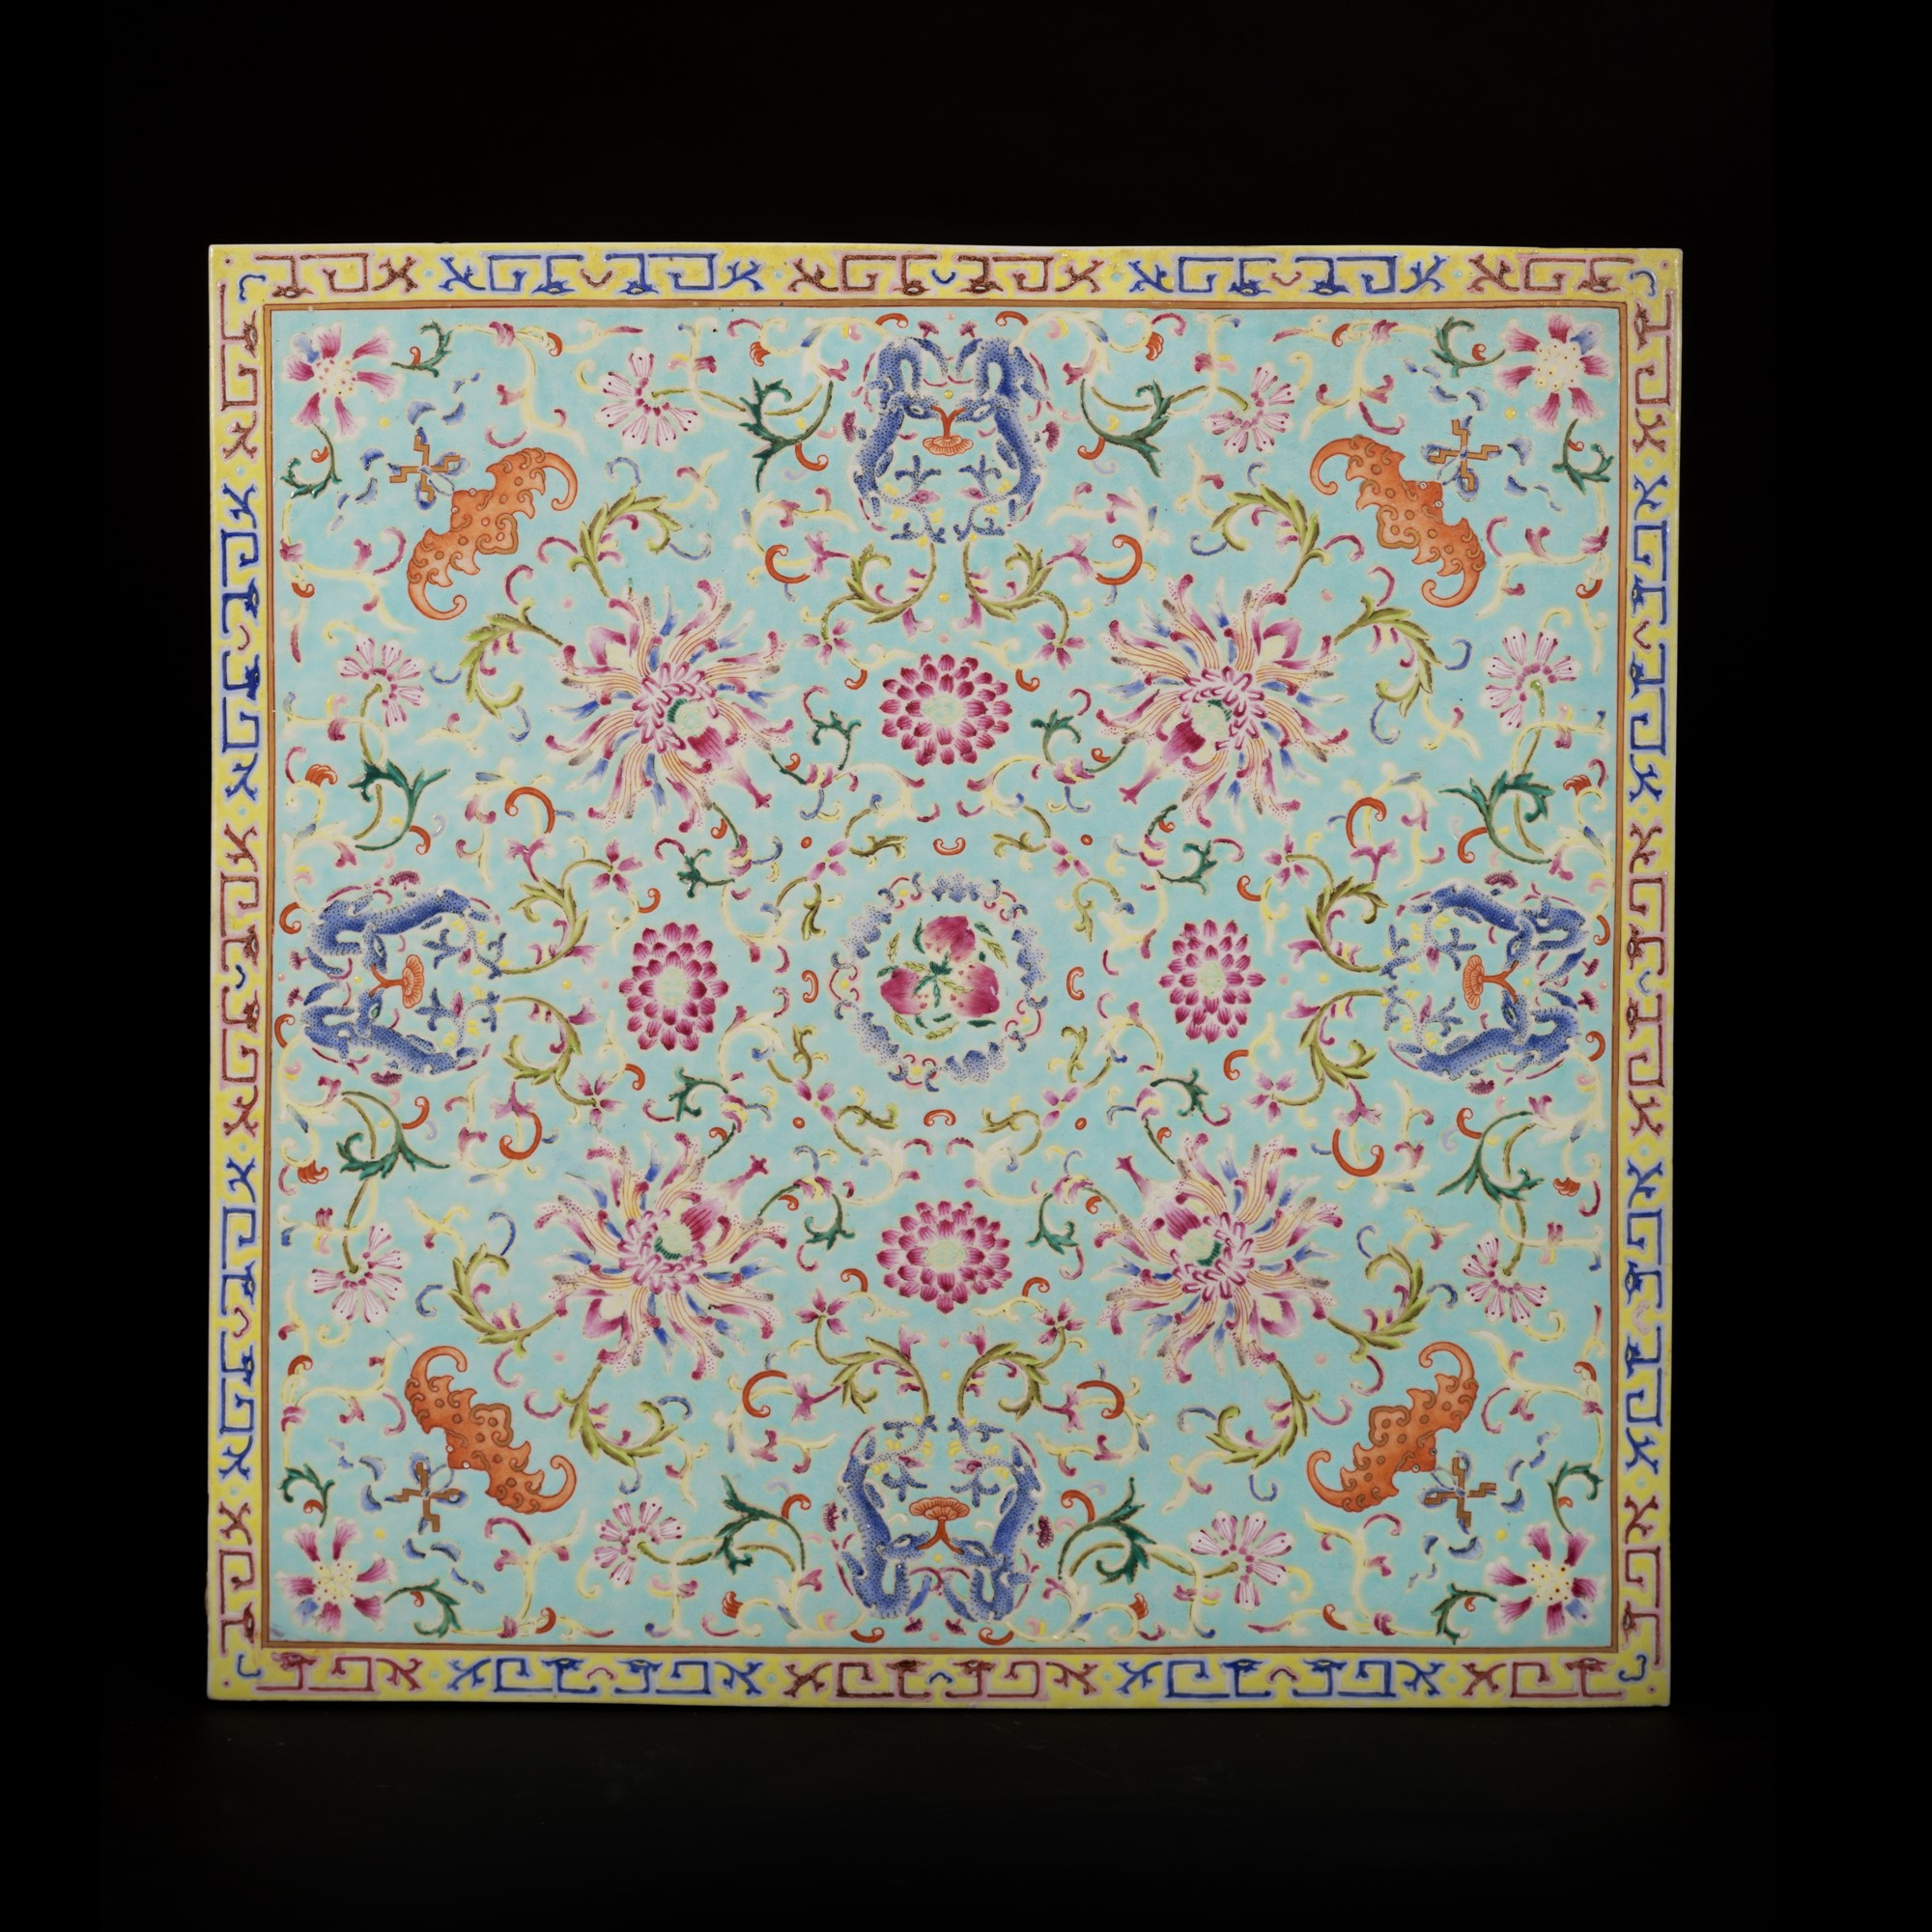 TURQUOISE-GROUND FAMILLE ROSE PORCELAIN PLAQUE h. 42,7 cn x l. 42,7 cm